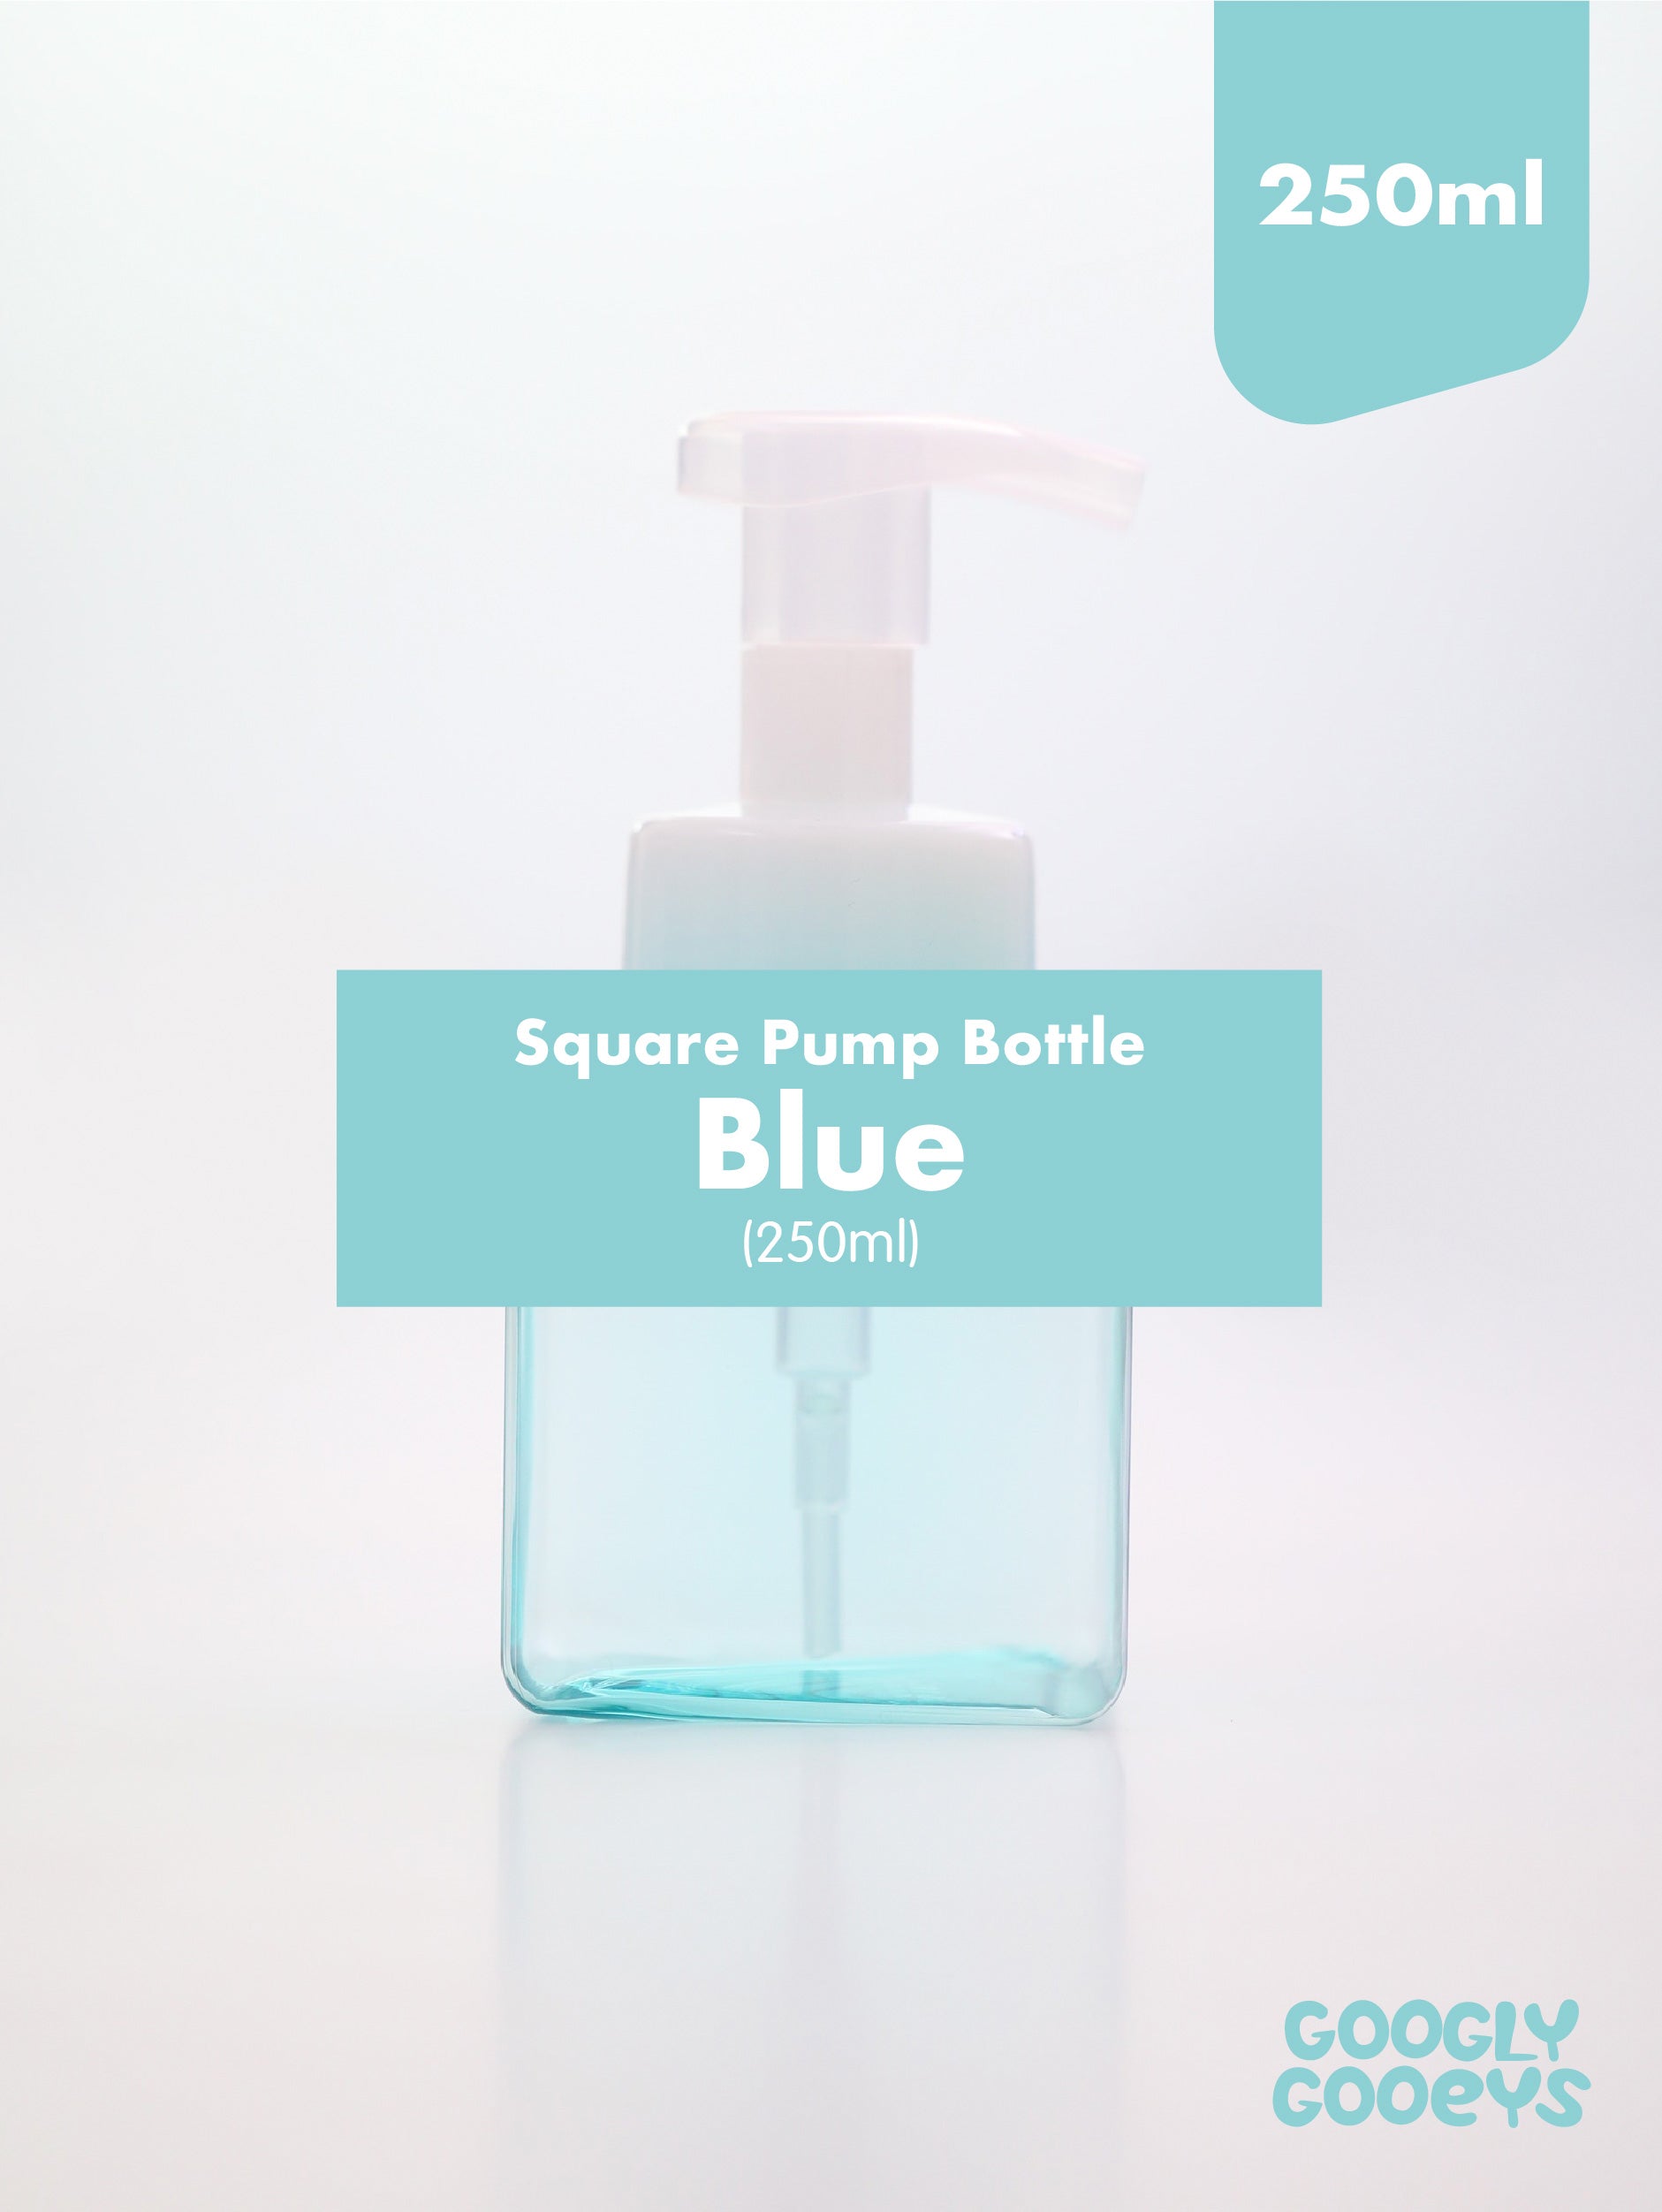 Square Pump Bottle Dispenser (250ml & 450ml)